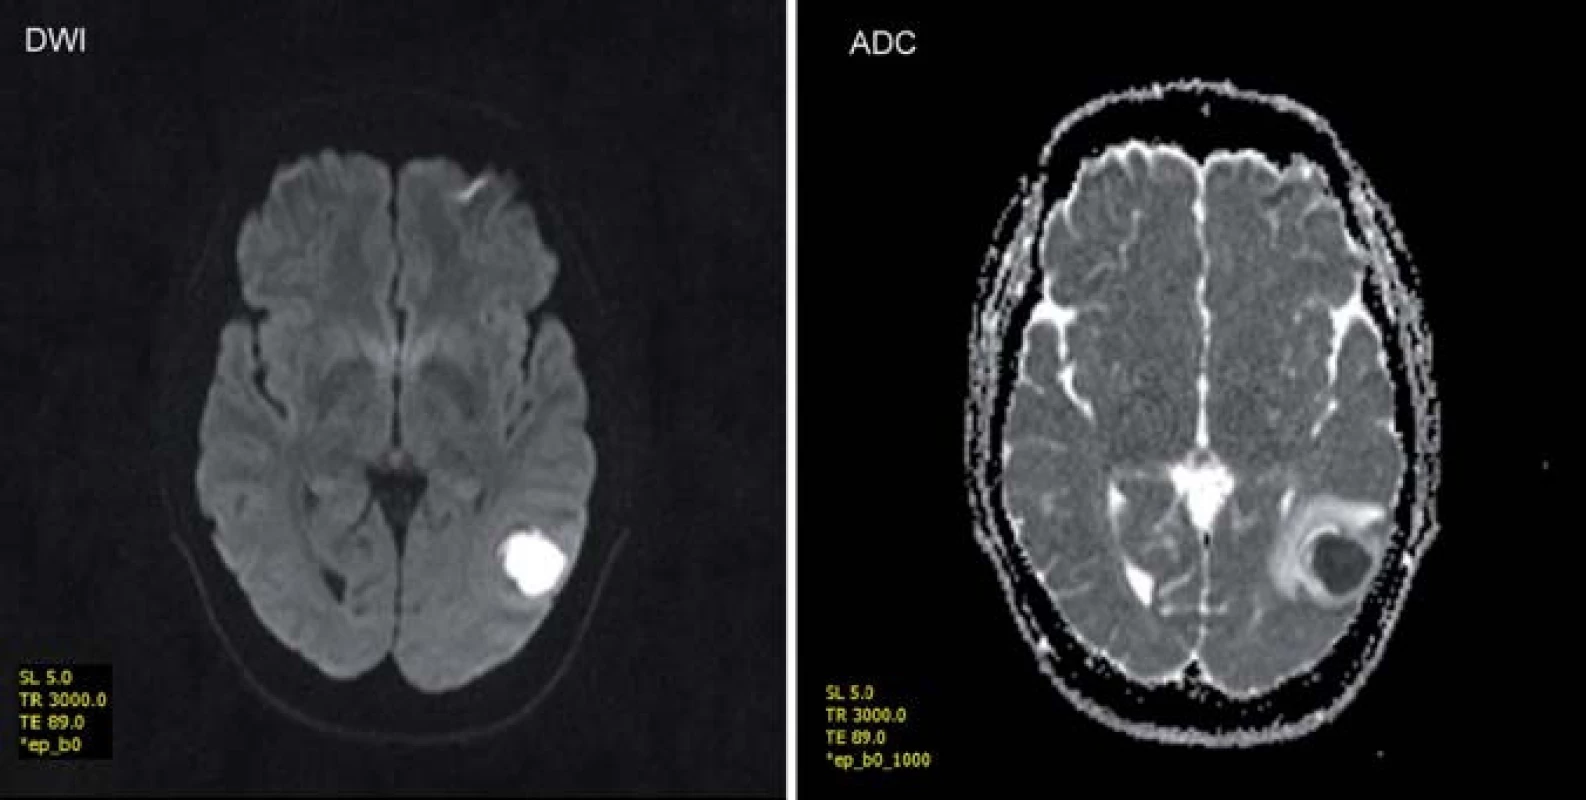 Zobrazení mozkového abscesu v difuzně váženém obraze (DWI) a zdánlivém koeficientu difuze (ADC) – vyšetření v poli 1,5T.
Fig. 2. Brain abscess in diffusion-weighted MRI (DVI) and apparent diffusion coefficient (ADC) – a 1.5 T examination.